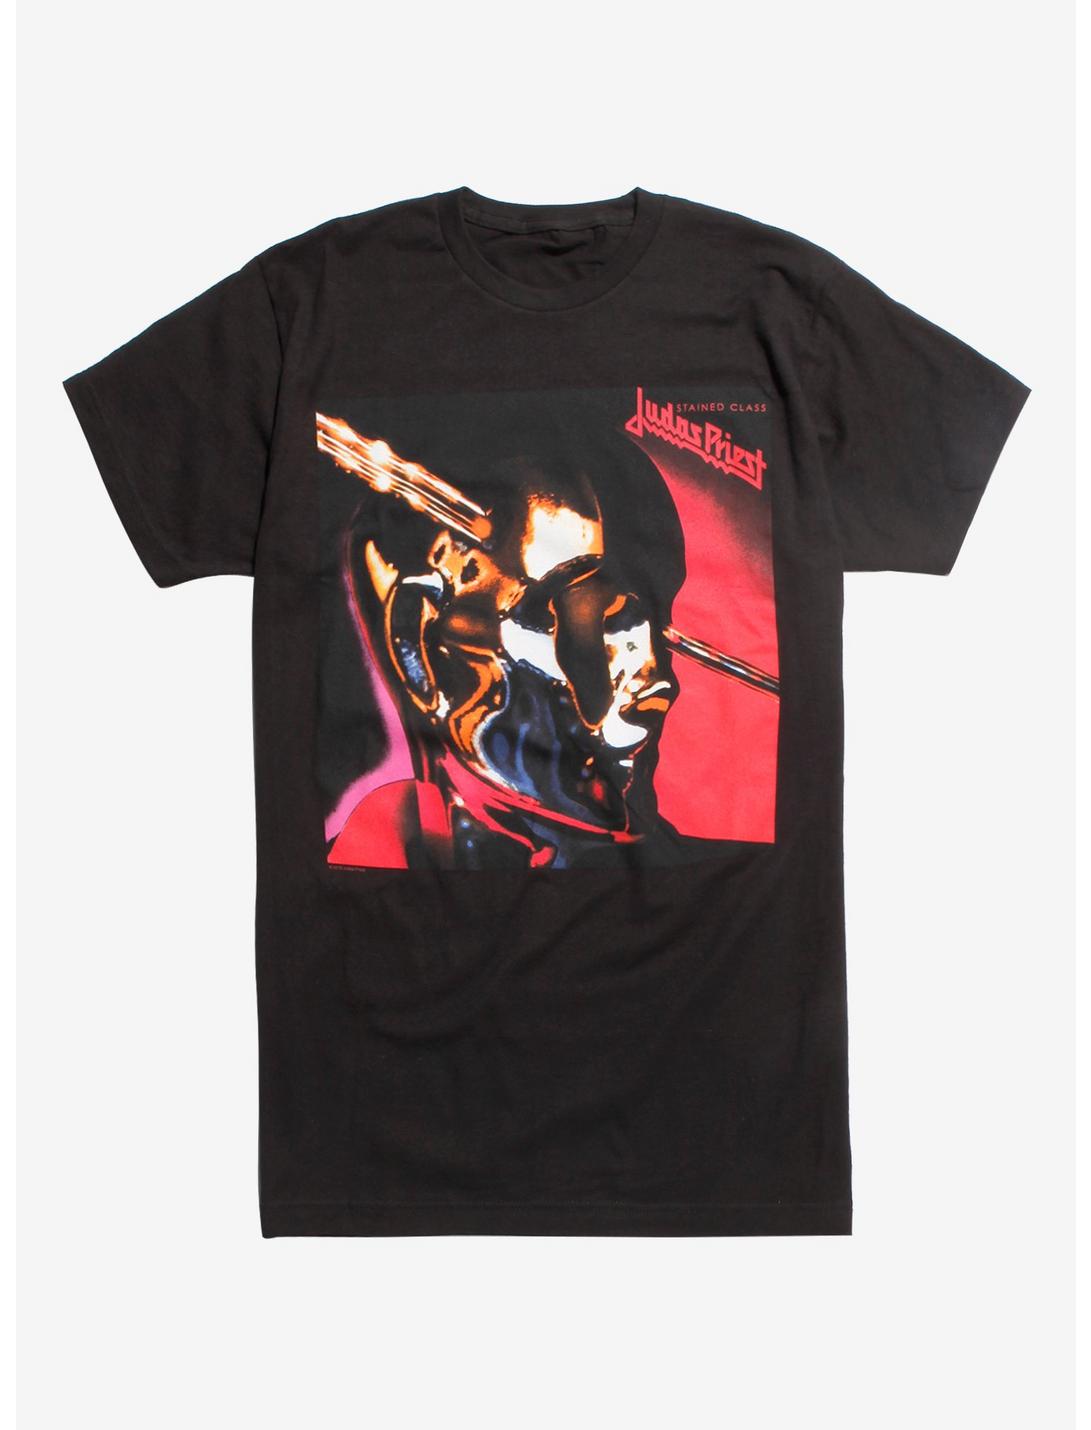 Judas Priest Stained Class Album Cover Shirt, BLACK, hi-res